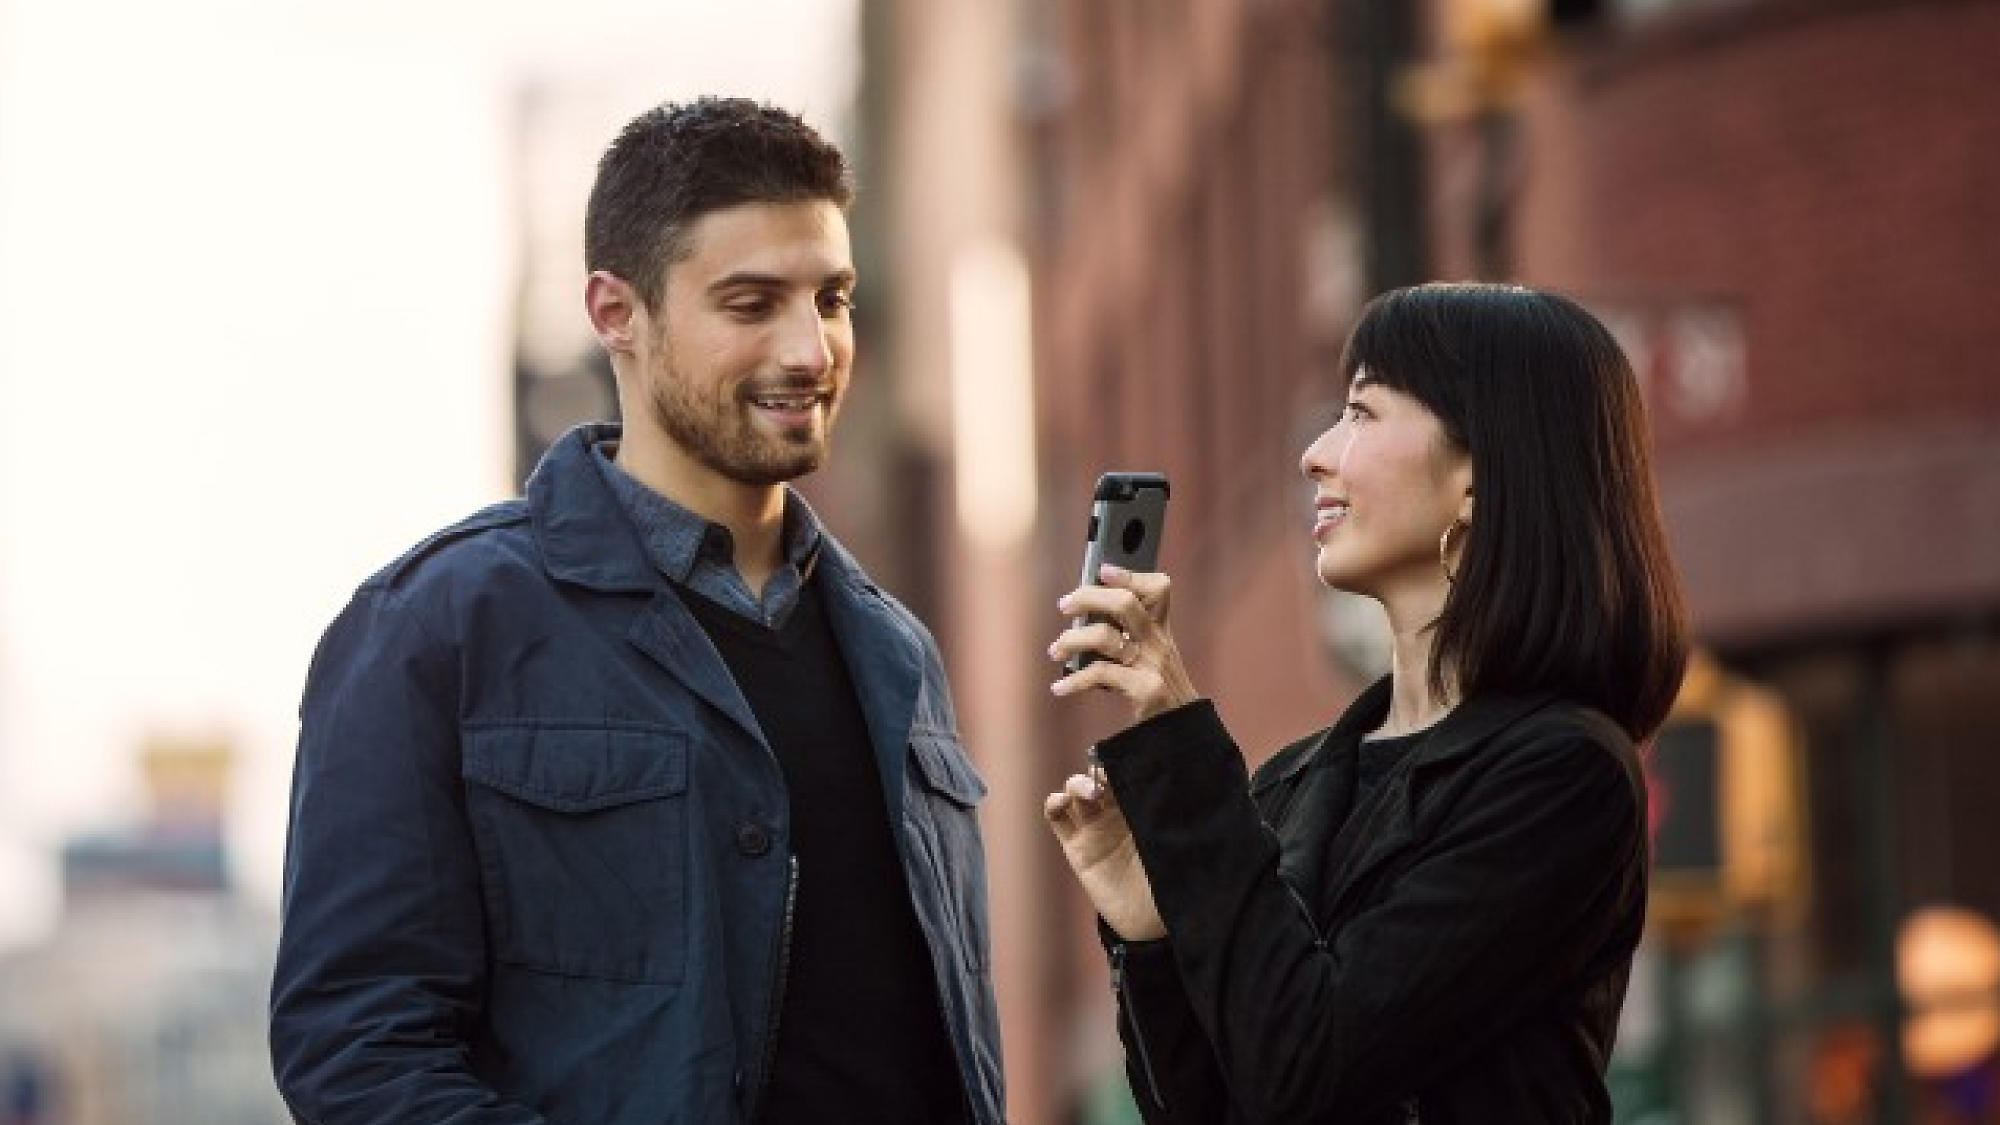 Eine Frau, die ihr Smartphone einem Mann zeigt, während beide auf einer Stadtstraße stehen, lächeln und sich unterhalten.